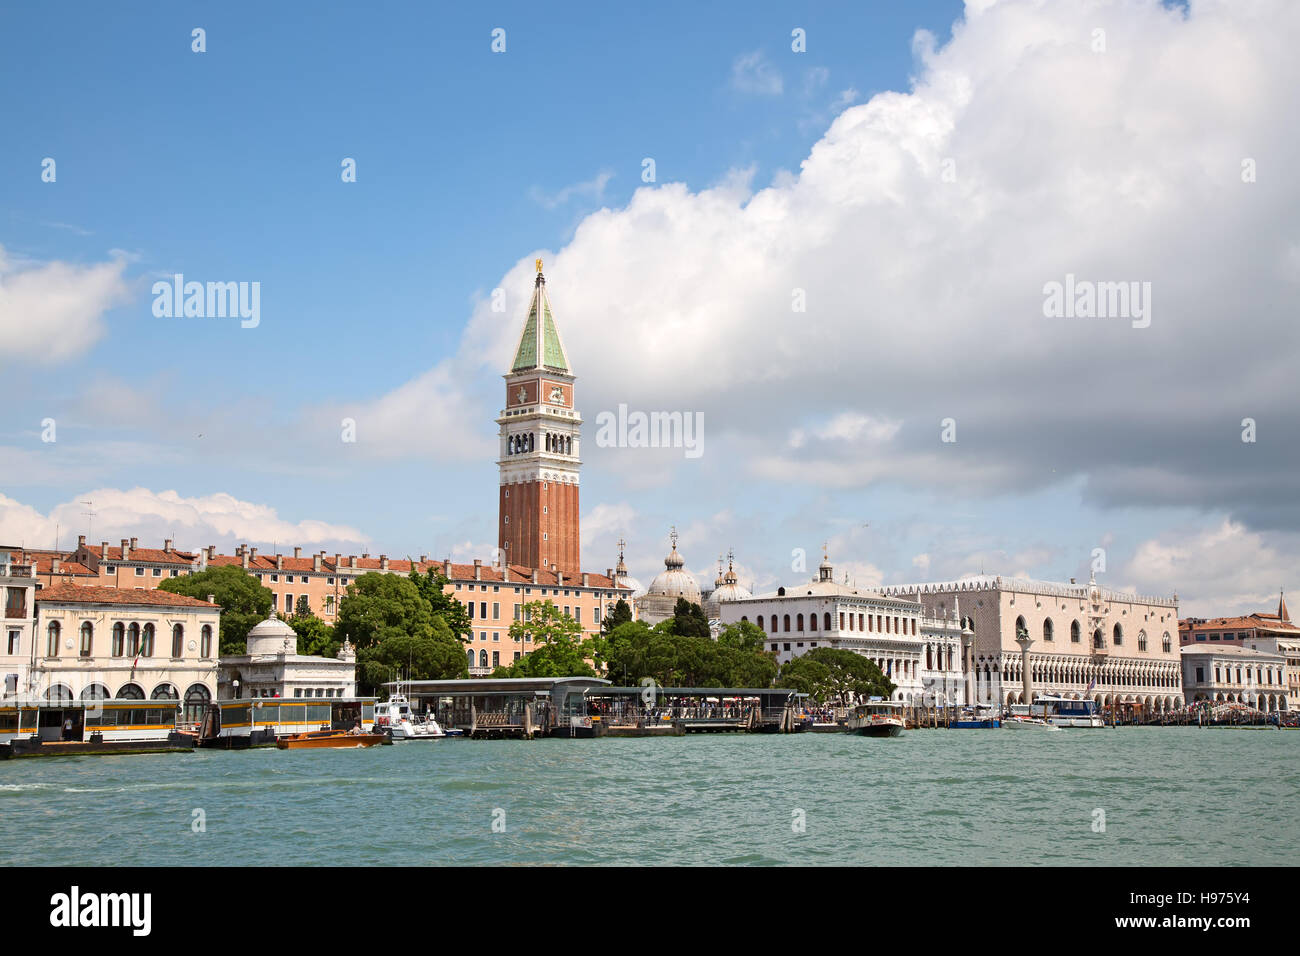 Glockenturm in der Stadt Venedig, Italien Stockfoto